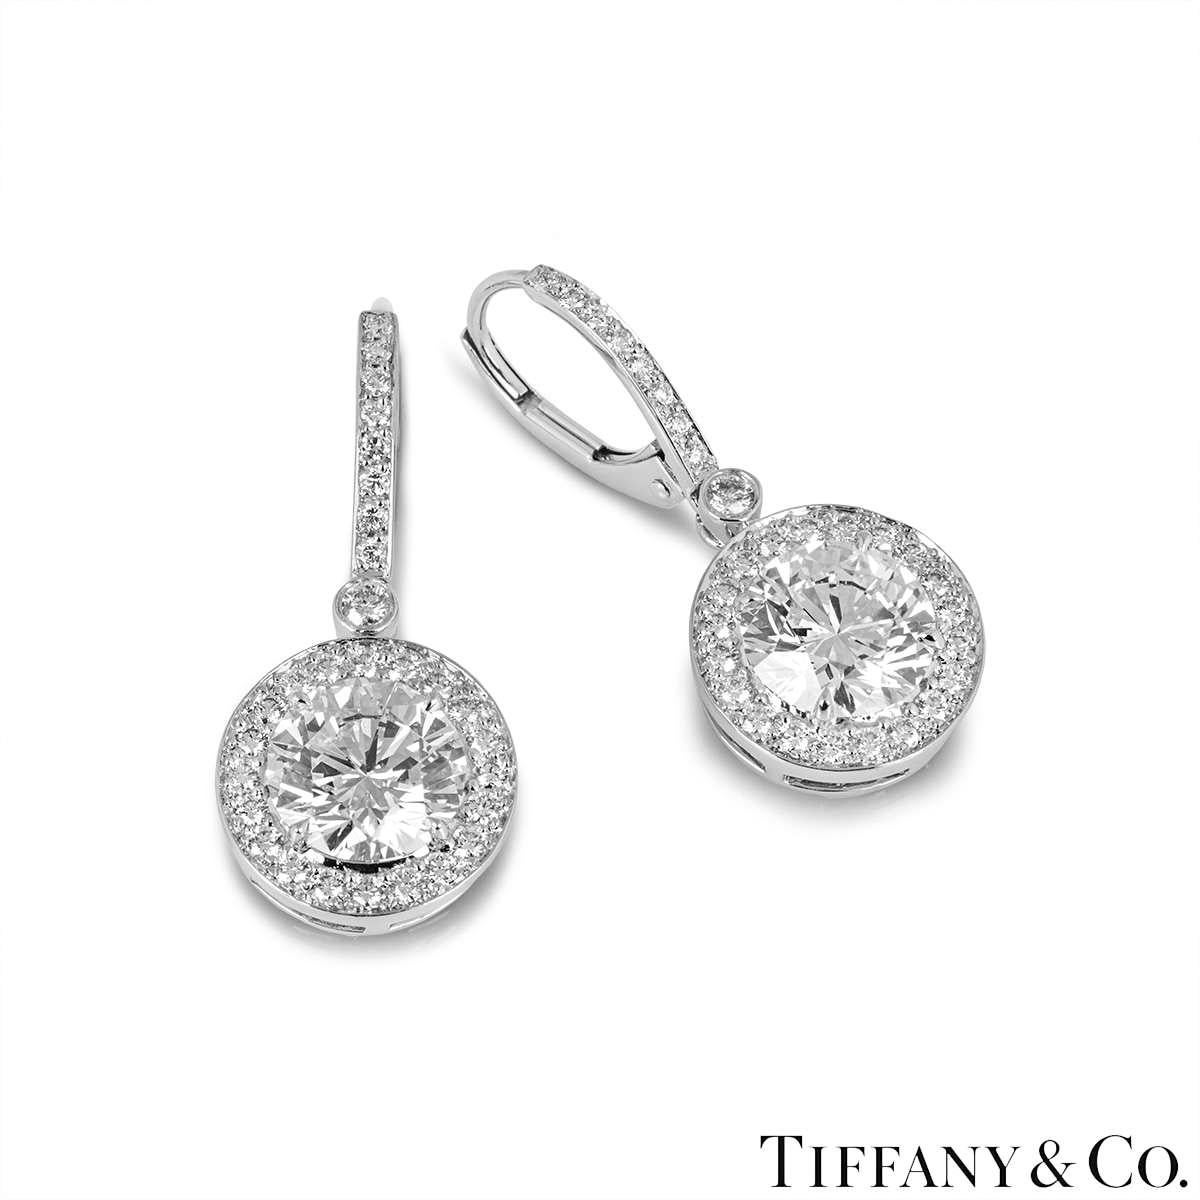 Ein prächtiges Paar Diamantohrringe aus Platin von Tiffany & Co. Jeder Ohrring ist mit einem runden Diamanten im Brillantschliff besetzt, der von einem Halo aus gepflasterten Diamanten und einem diamantbesetzten Tropfen ergänzt wird. Der erste